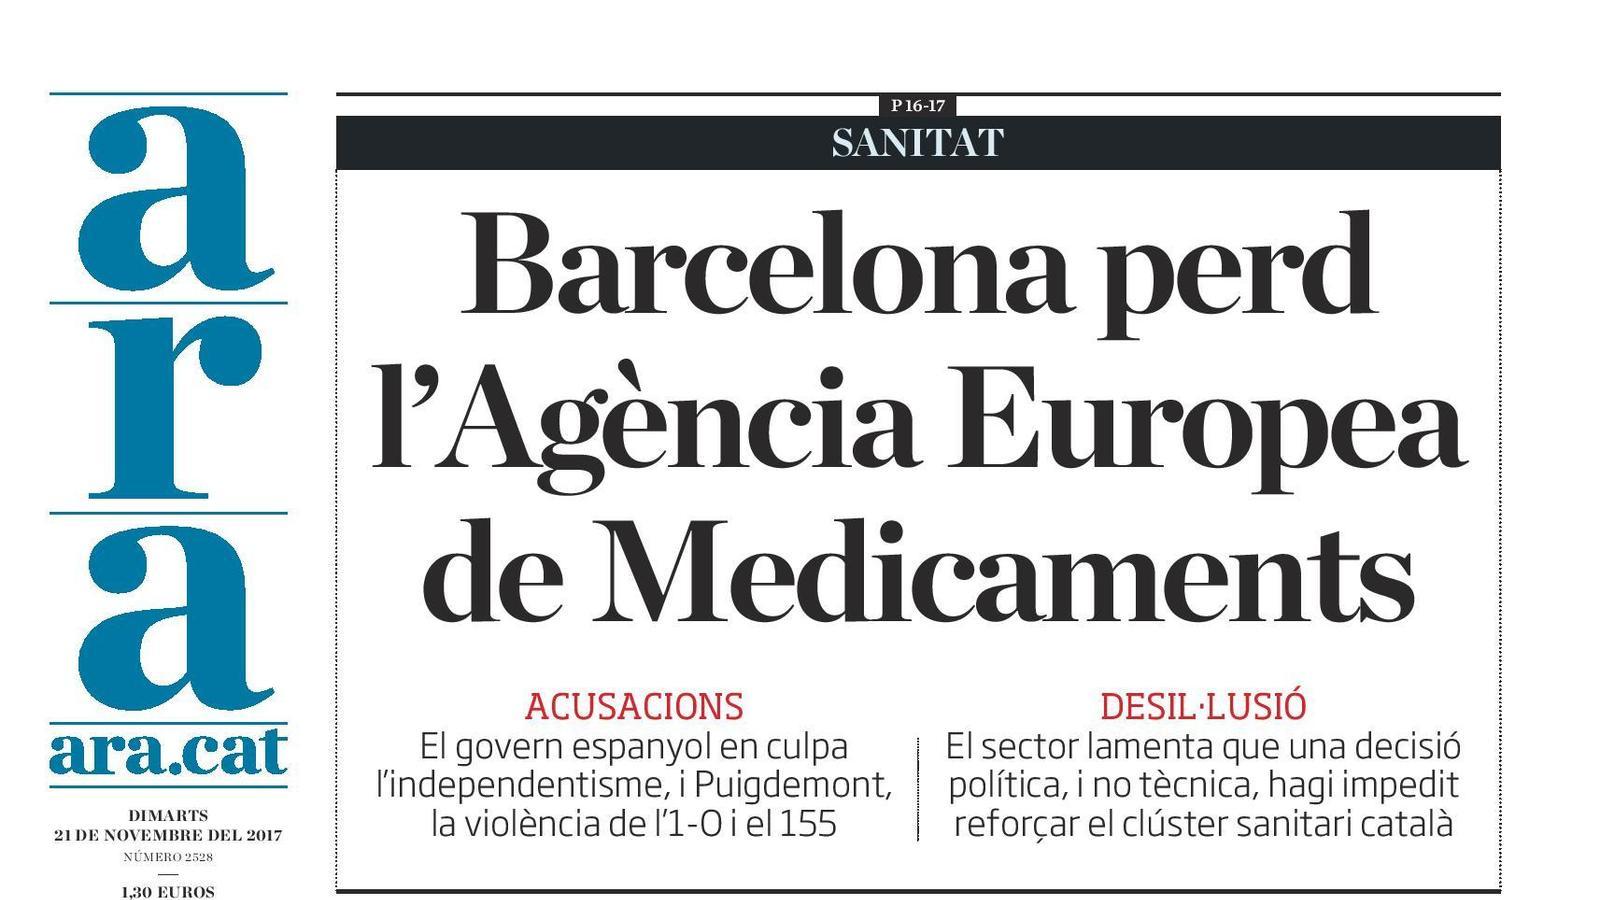 "Barcelona perd l'Agència Europea de Medicaments", portada de l'ARA